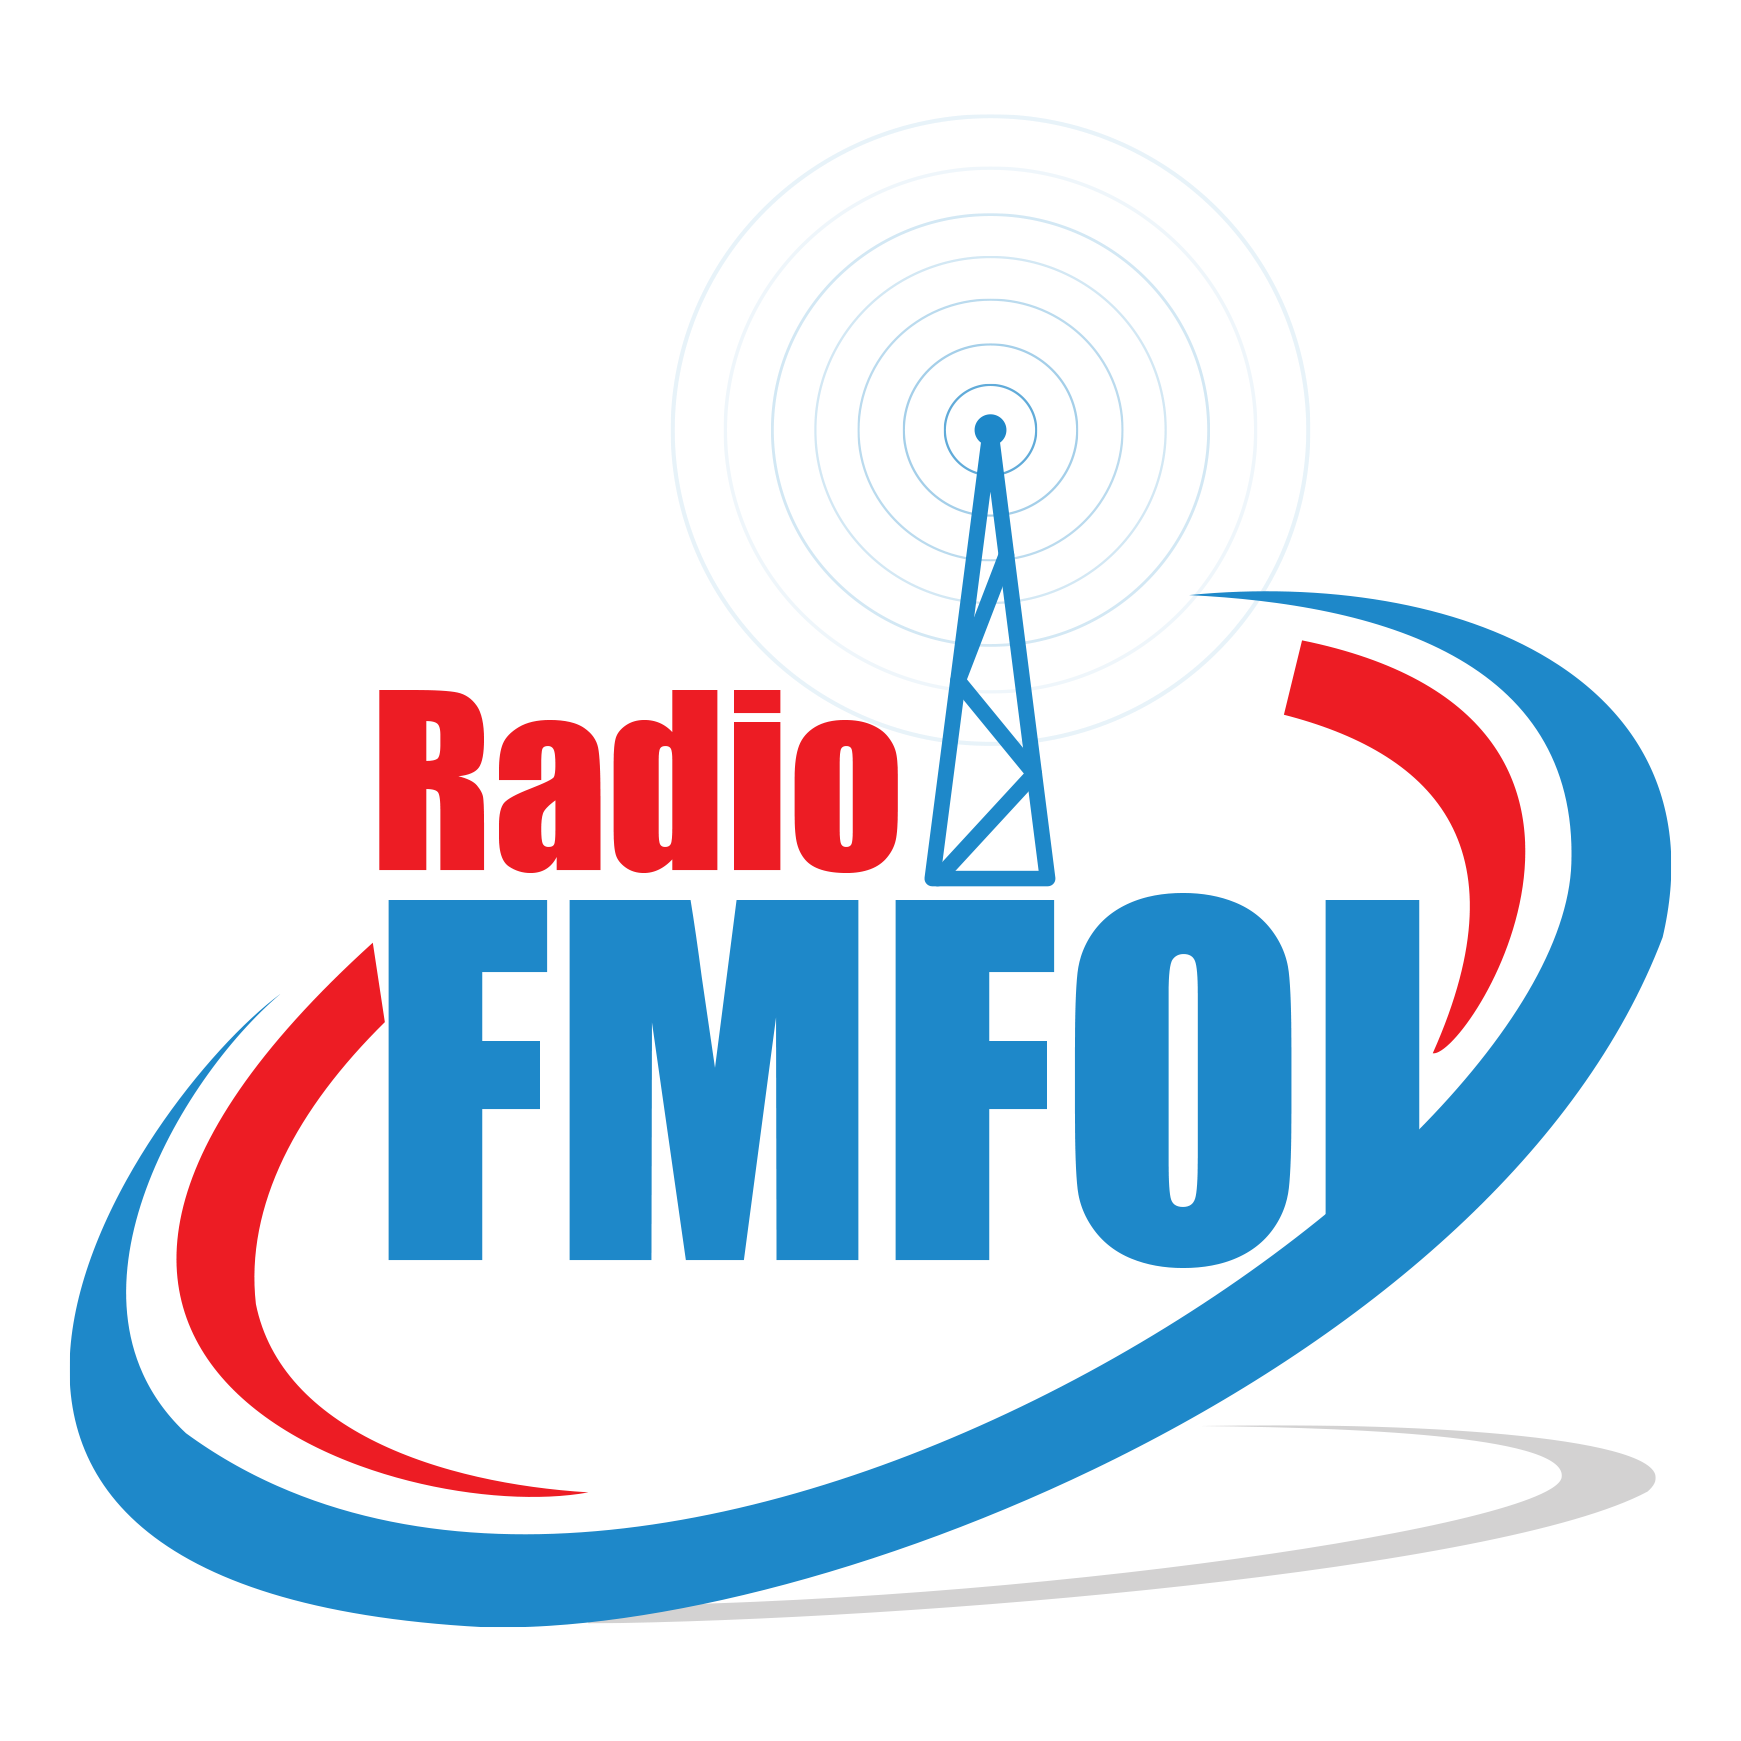 Radio FMFOI